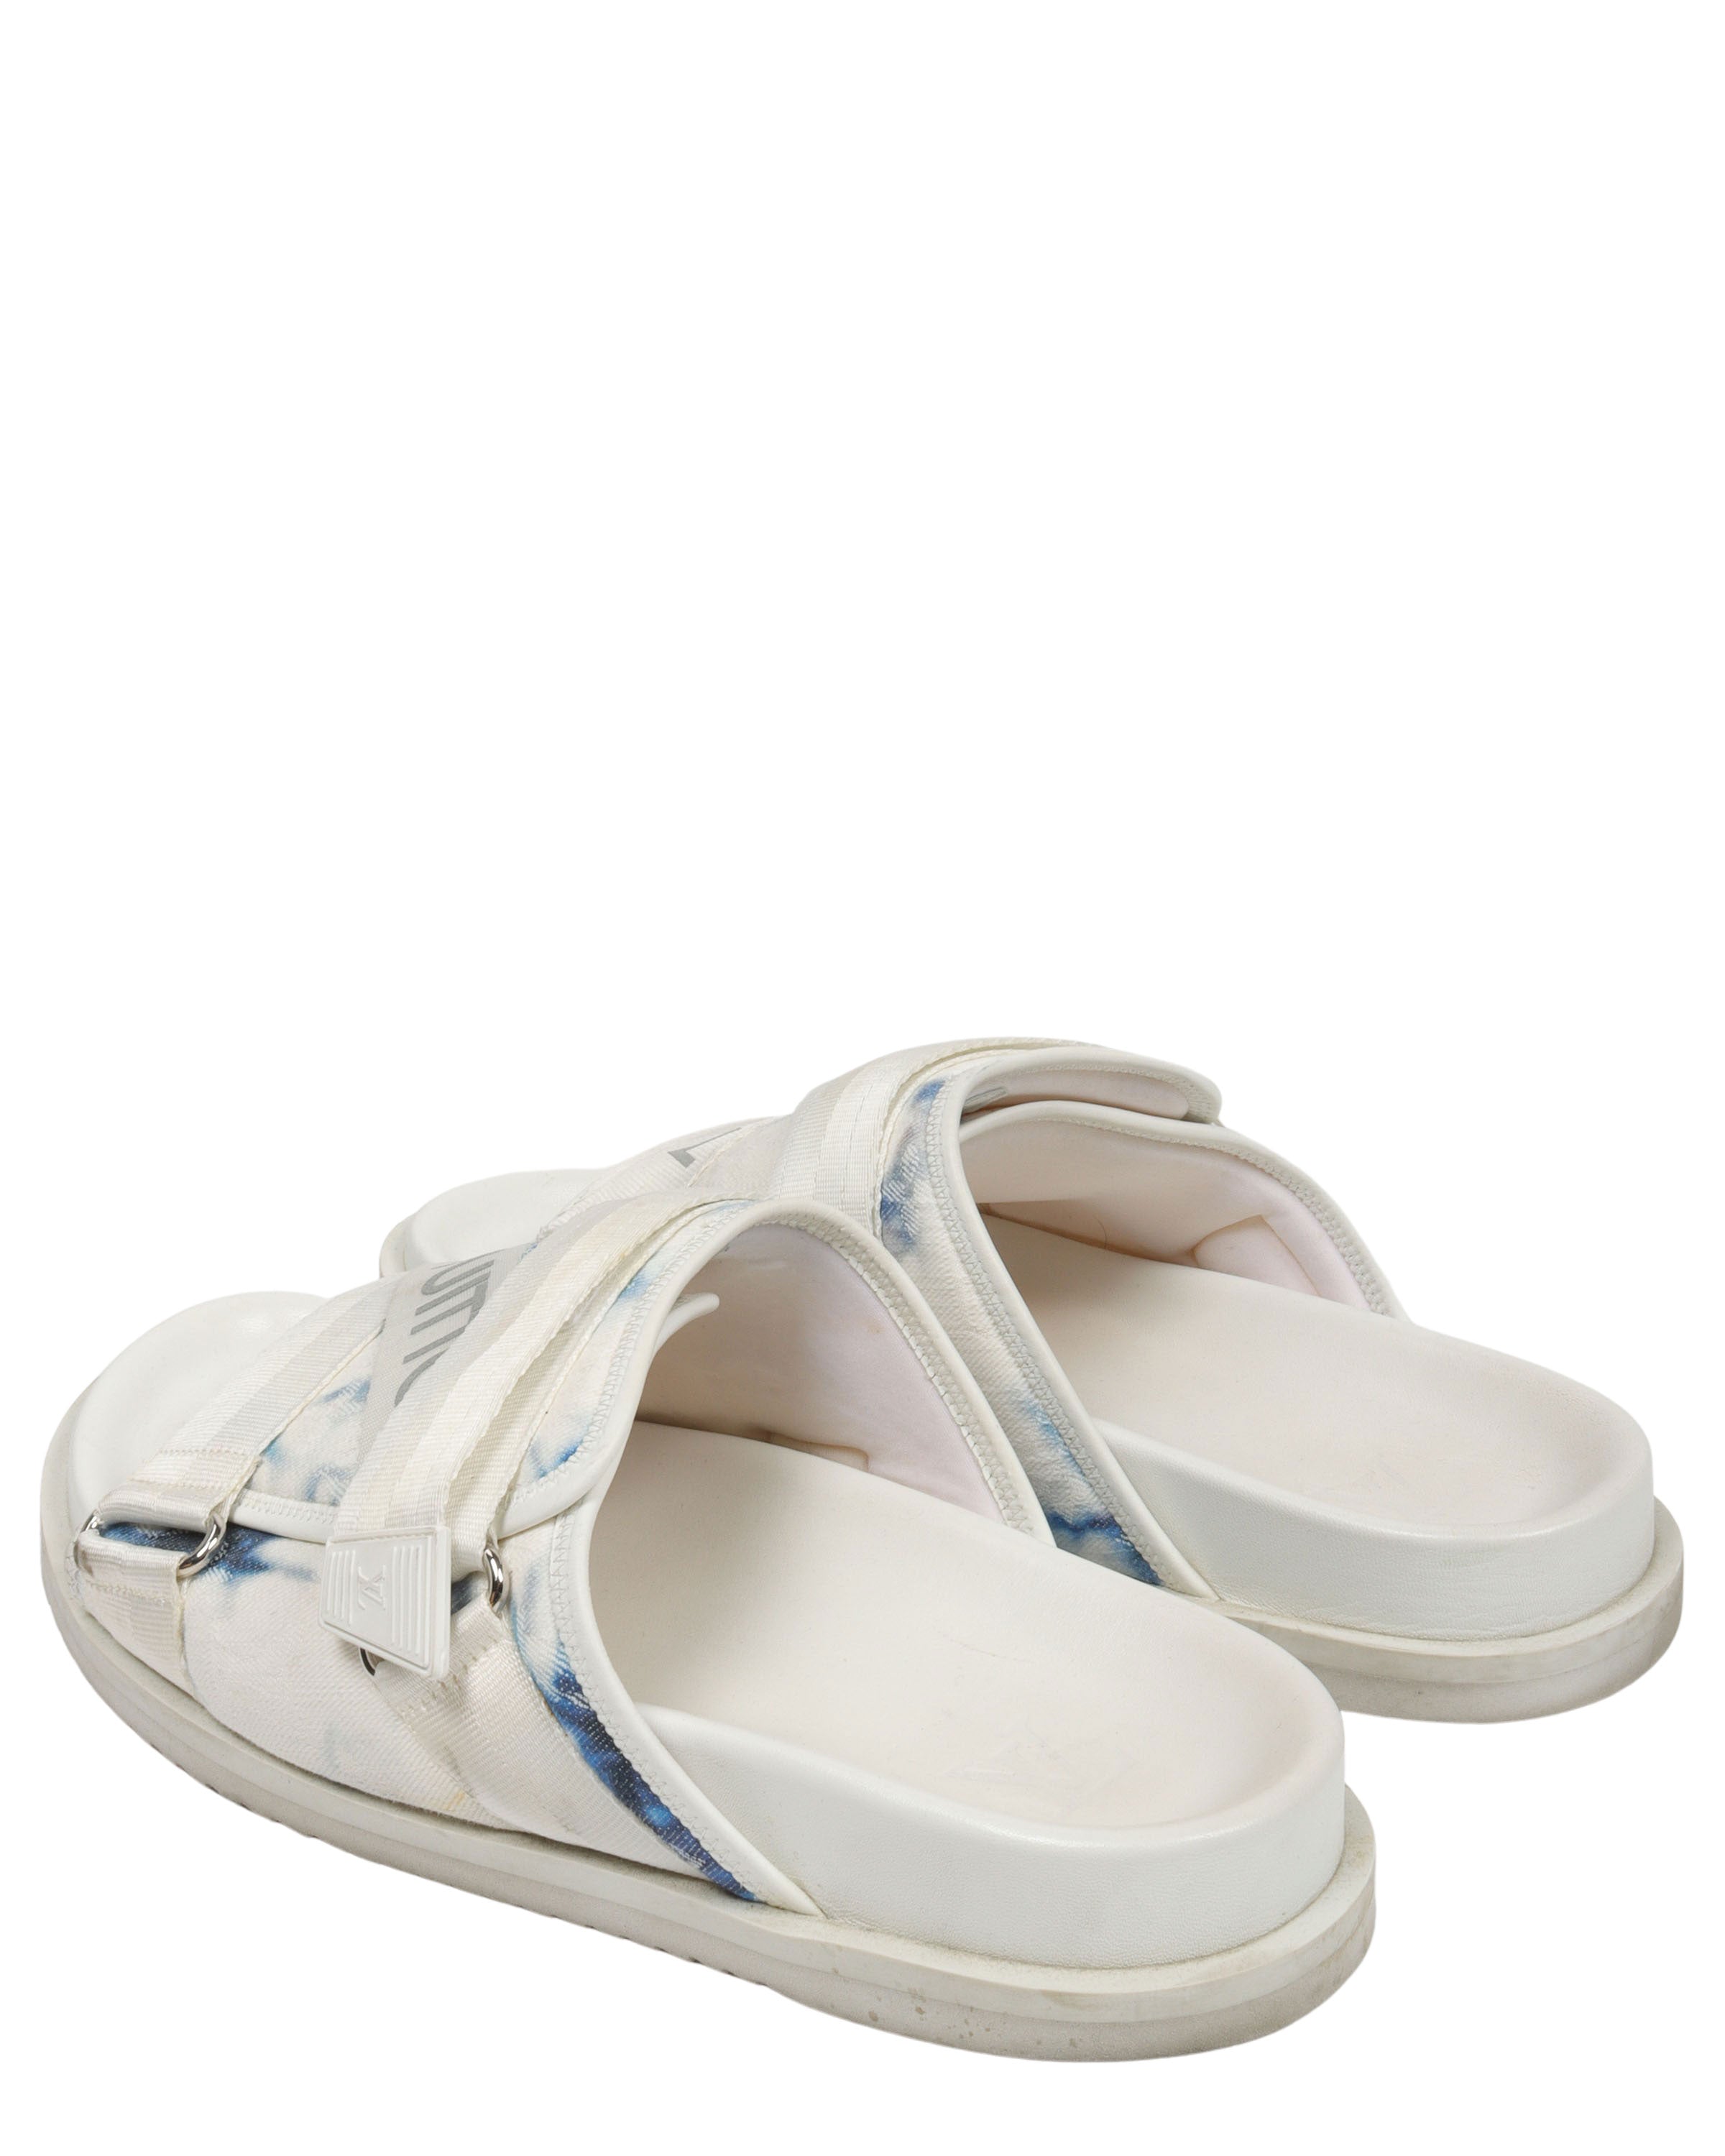 Louis Vuitton HONOLULU MULE Slides - White Sandals, Shoes - LOU473811